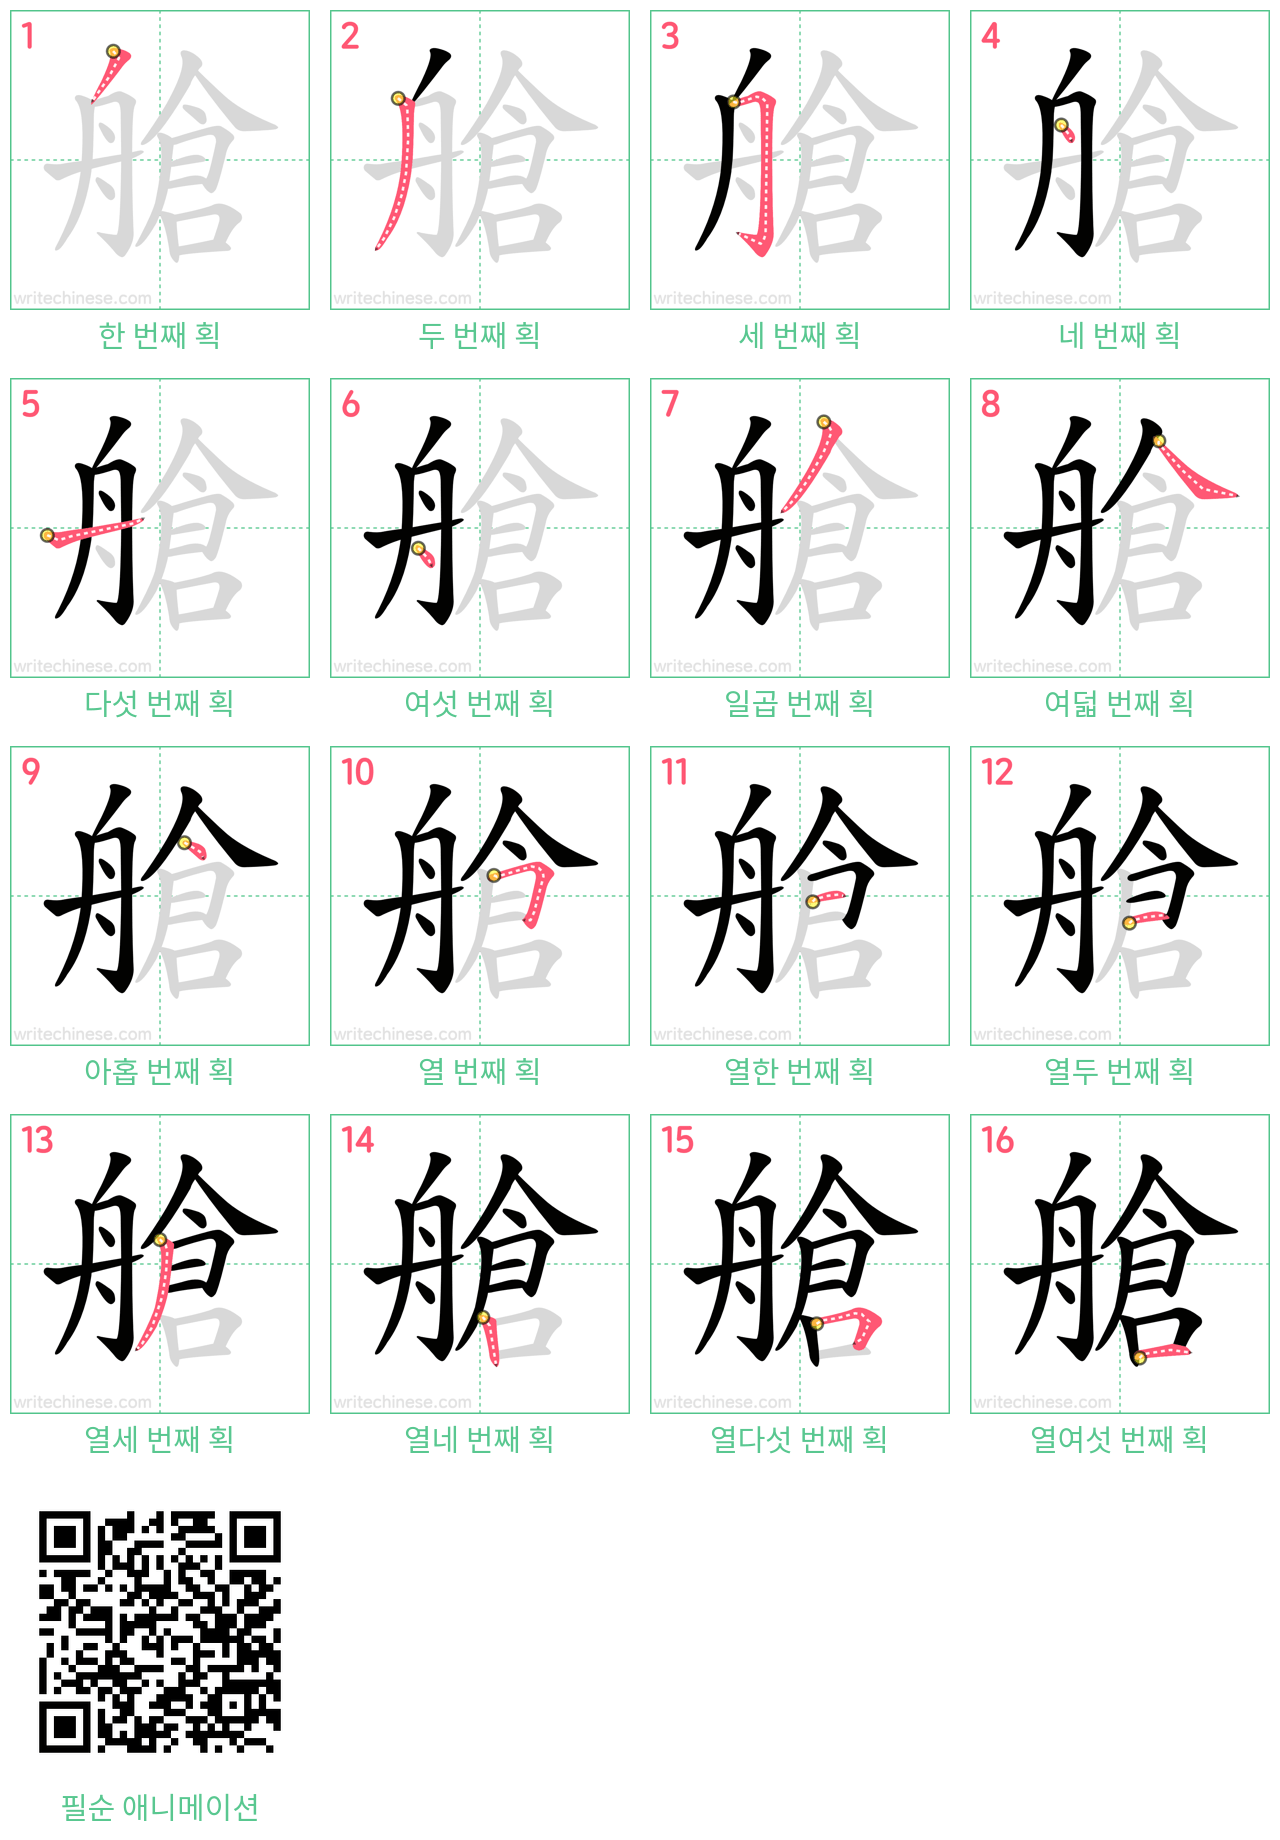 艙 step-by-step stroke order diagrams